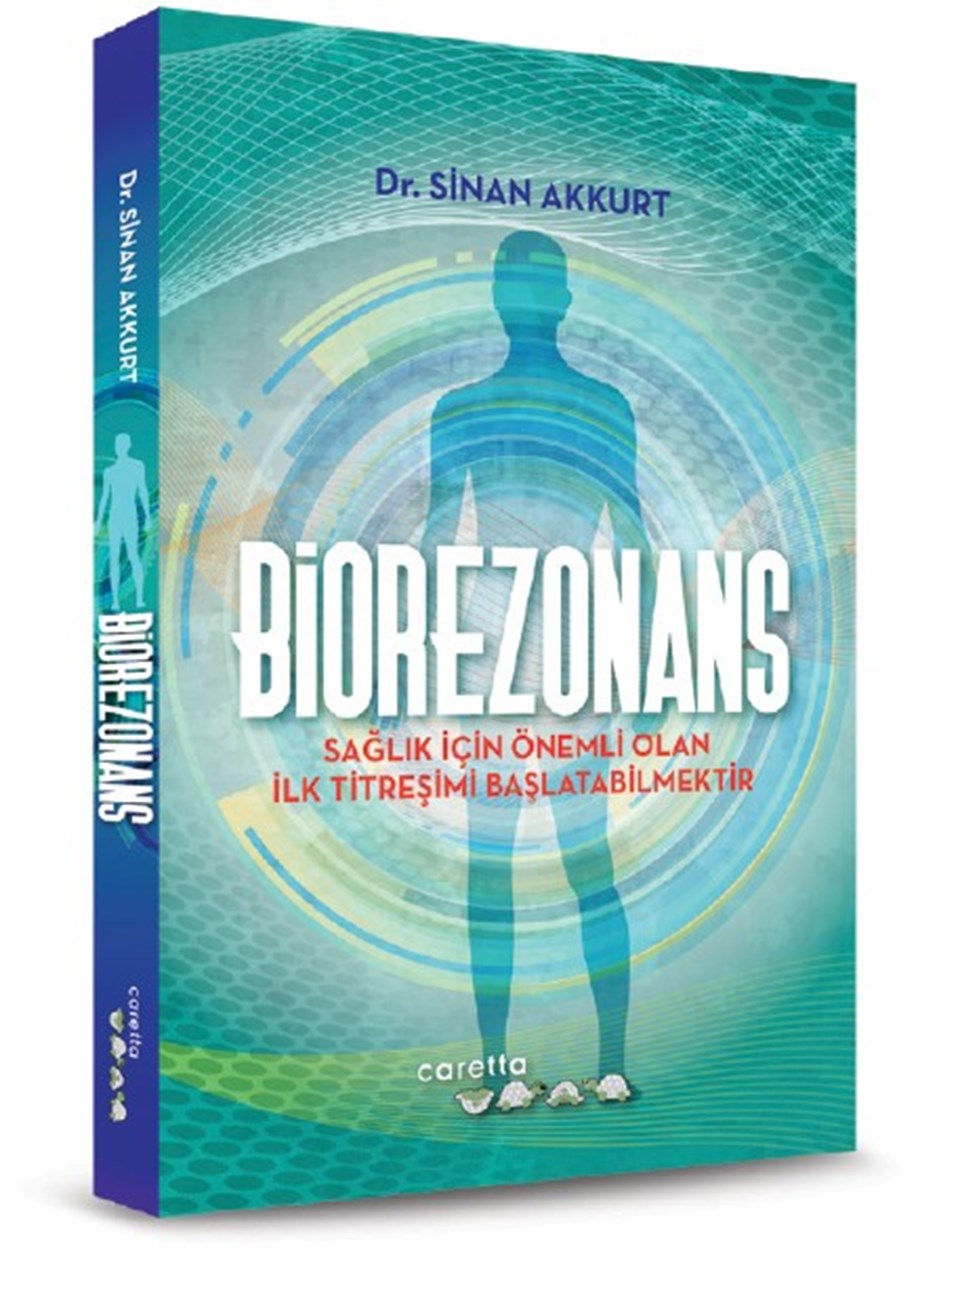 "Biorezonans hastalıkların tedavisine katkı sağlıyor" - 1